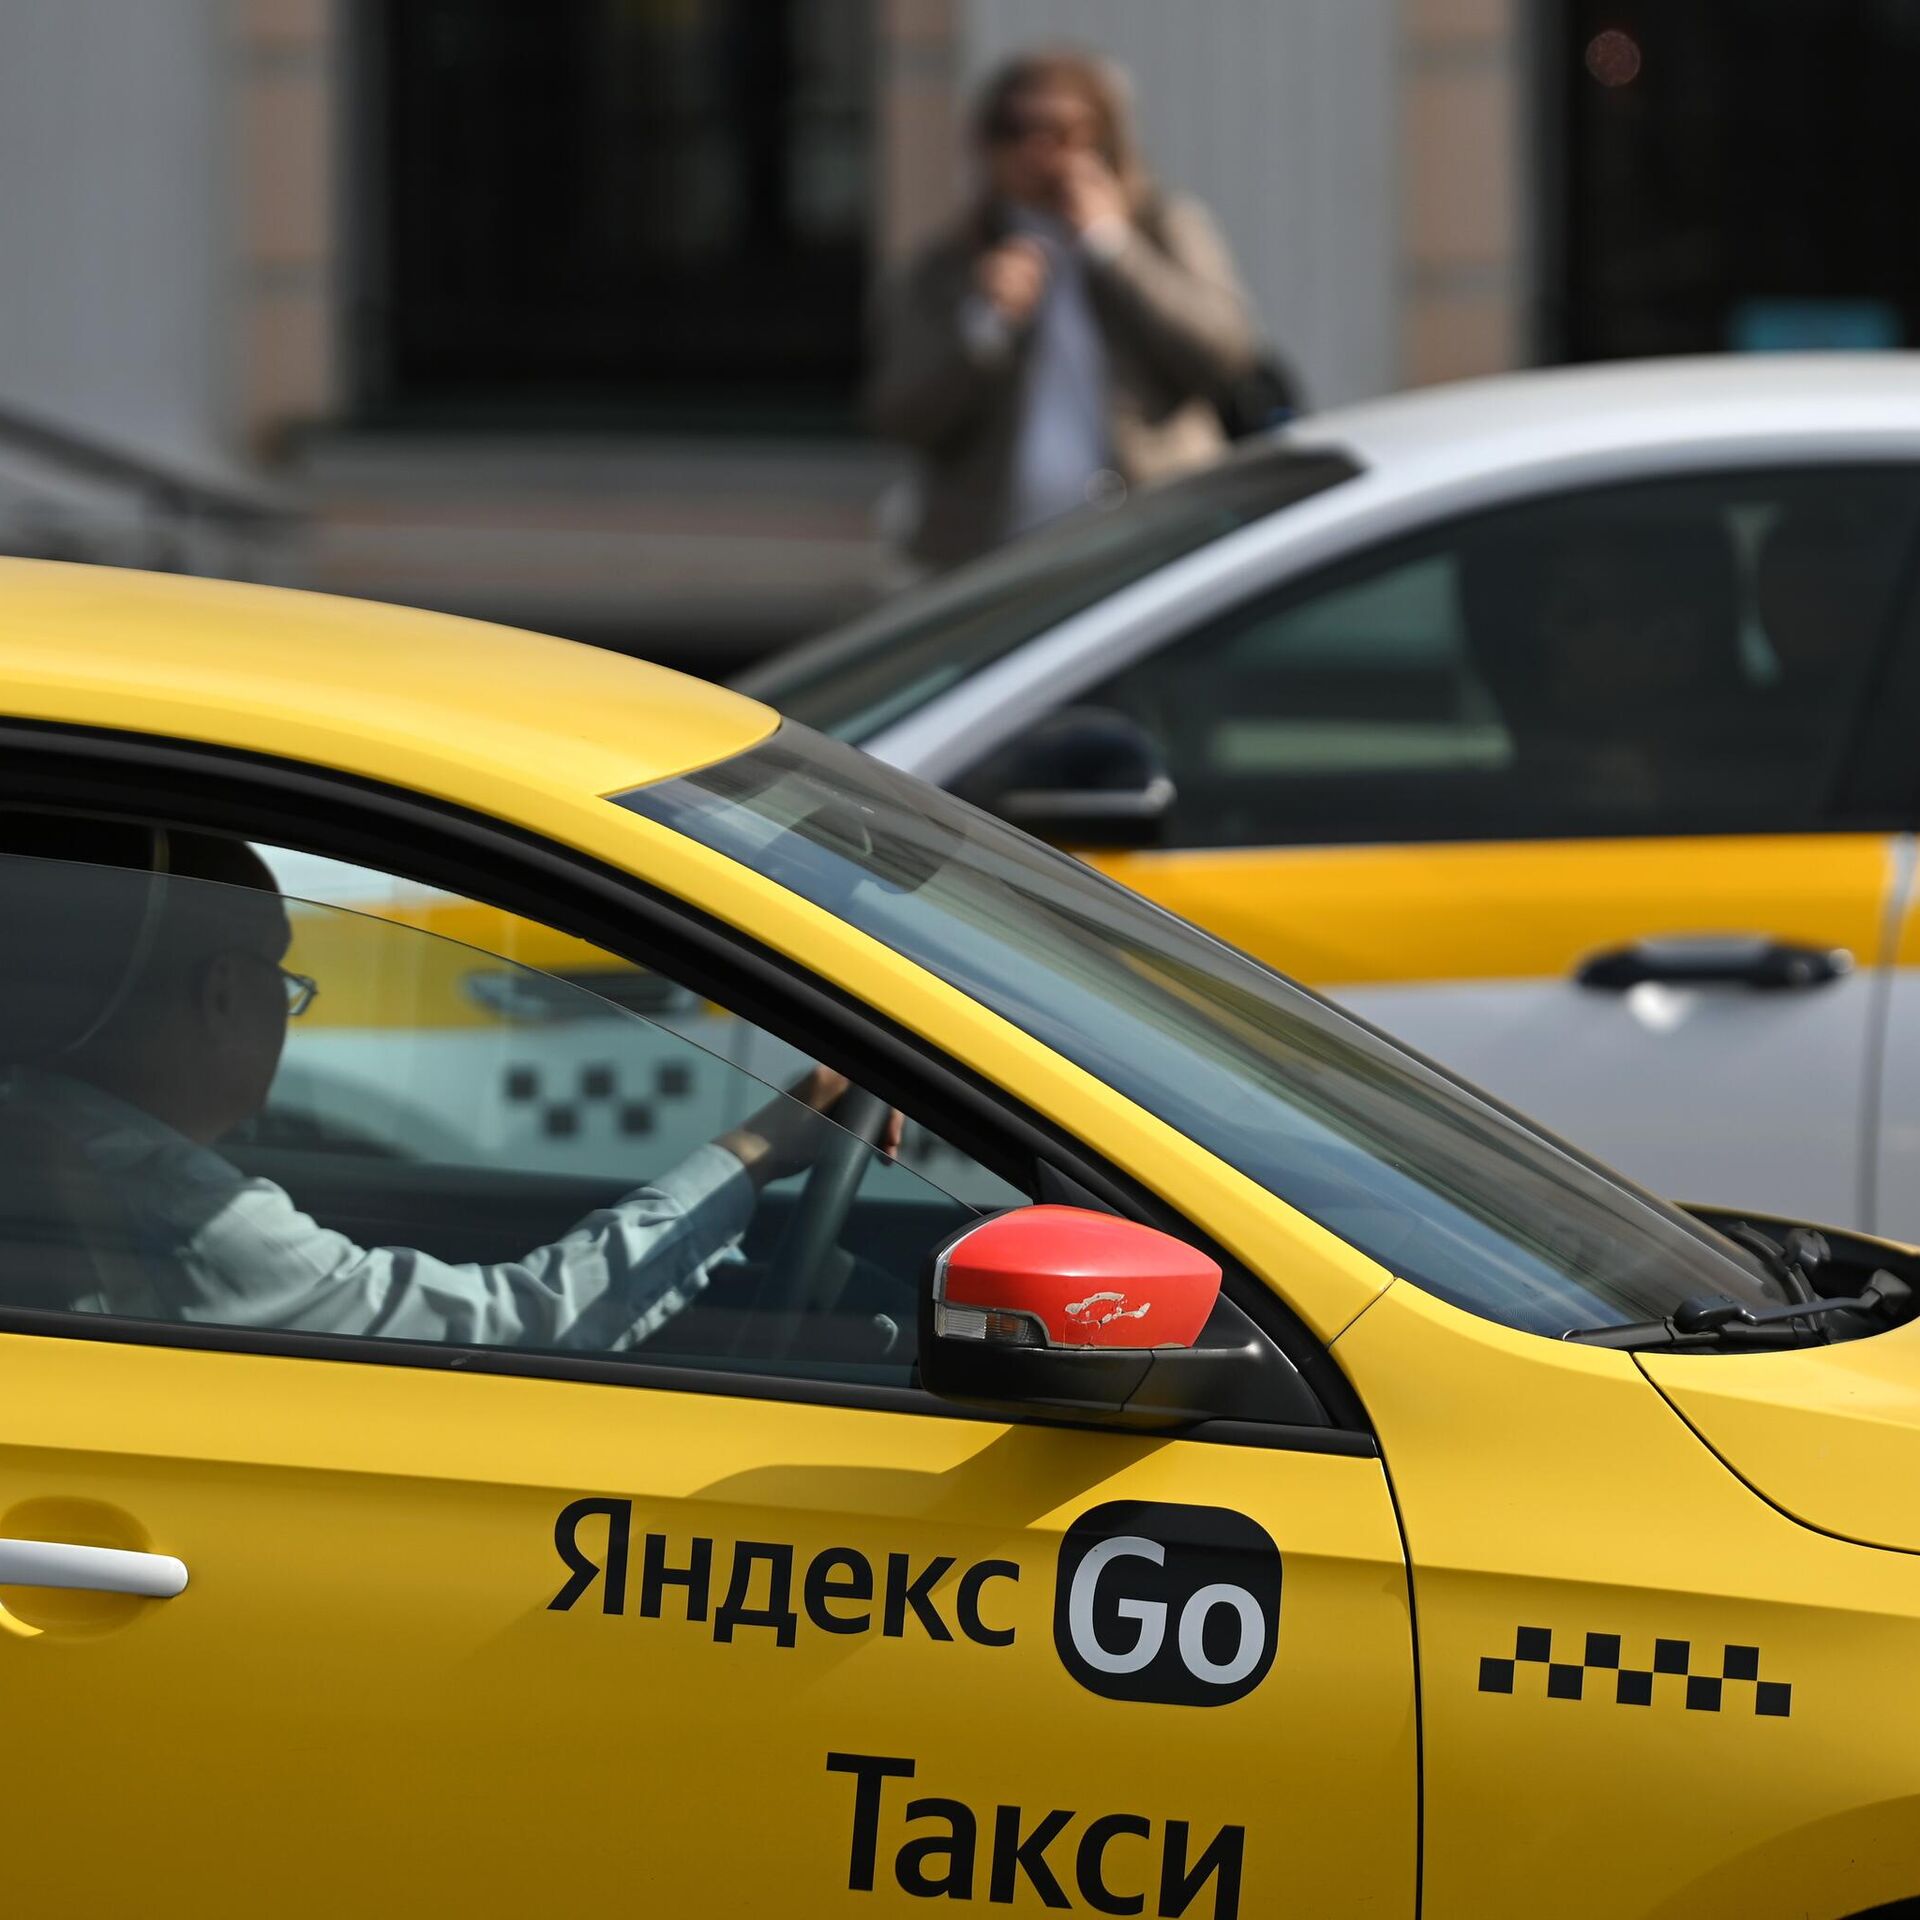 "Яндекс такси" Кыргызстанда монополист ишканалардын реестрине киргизилди